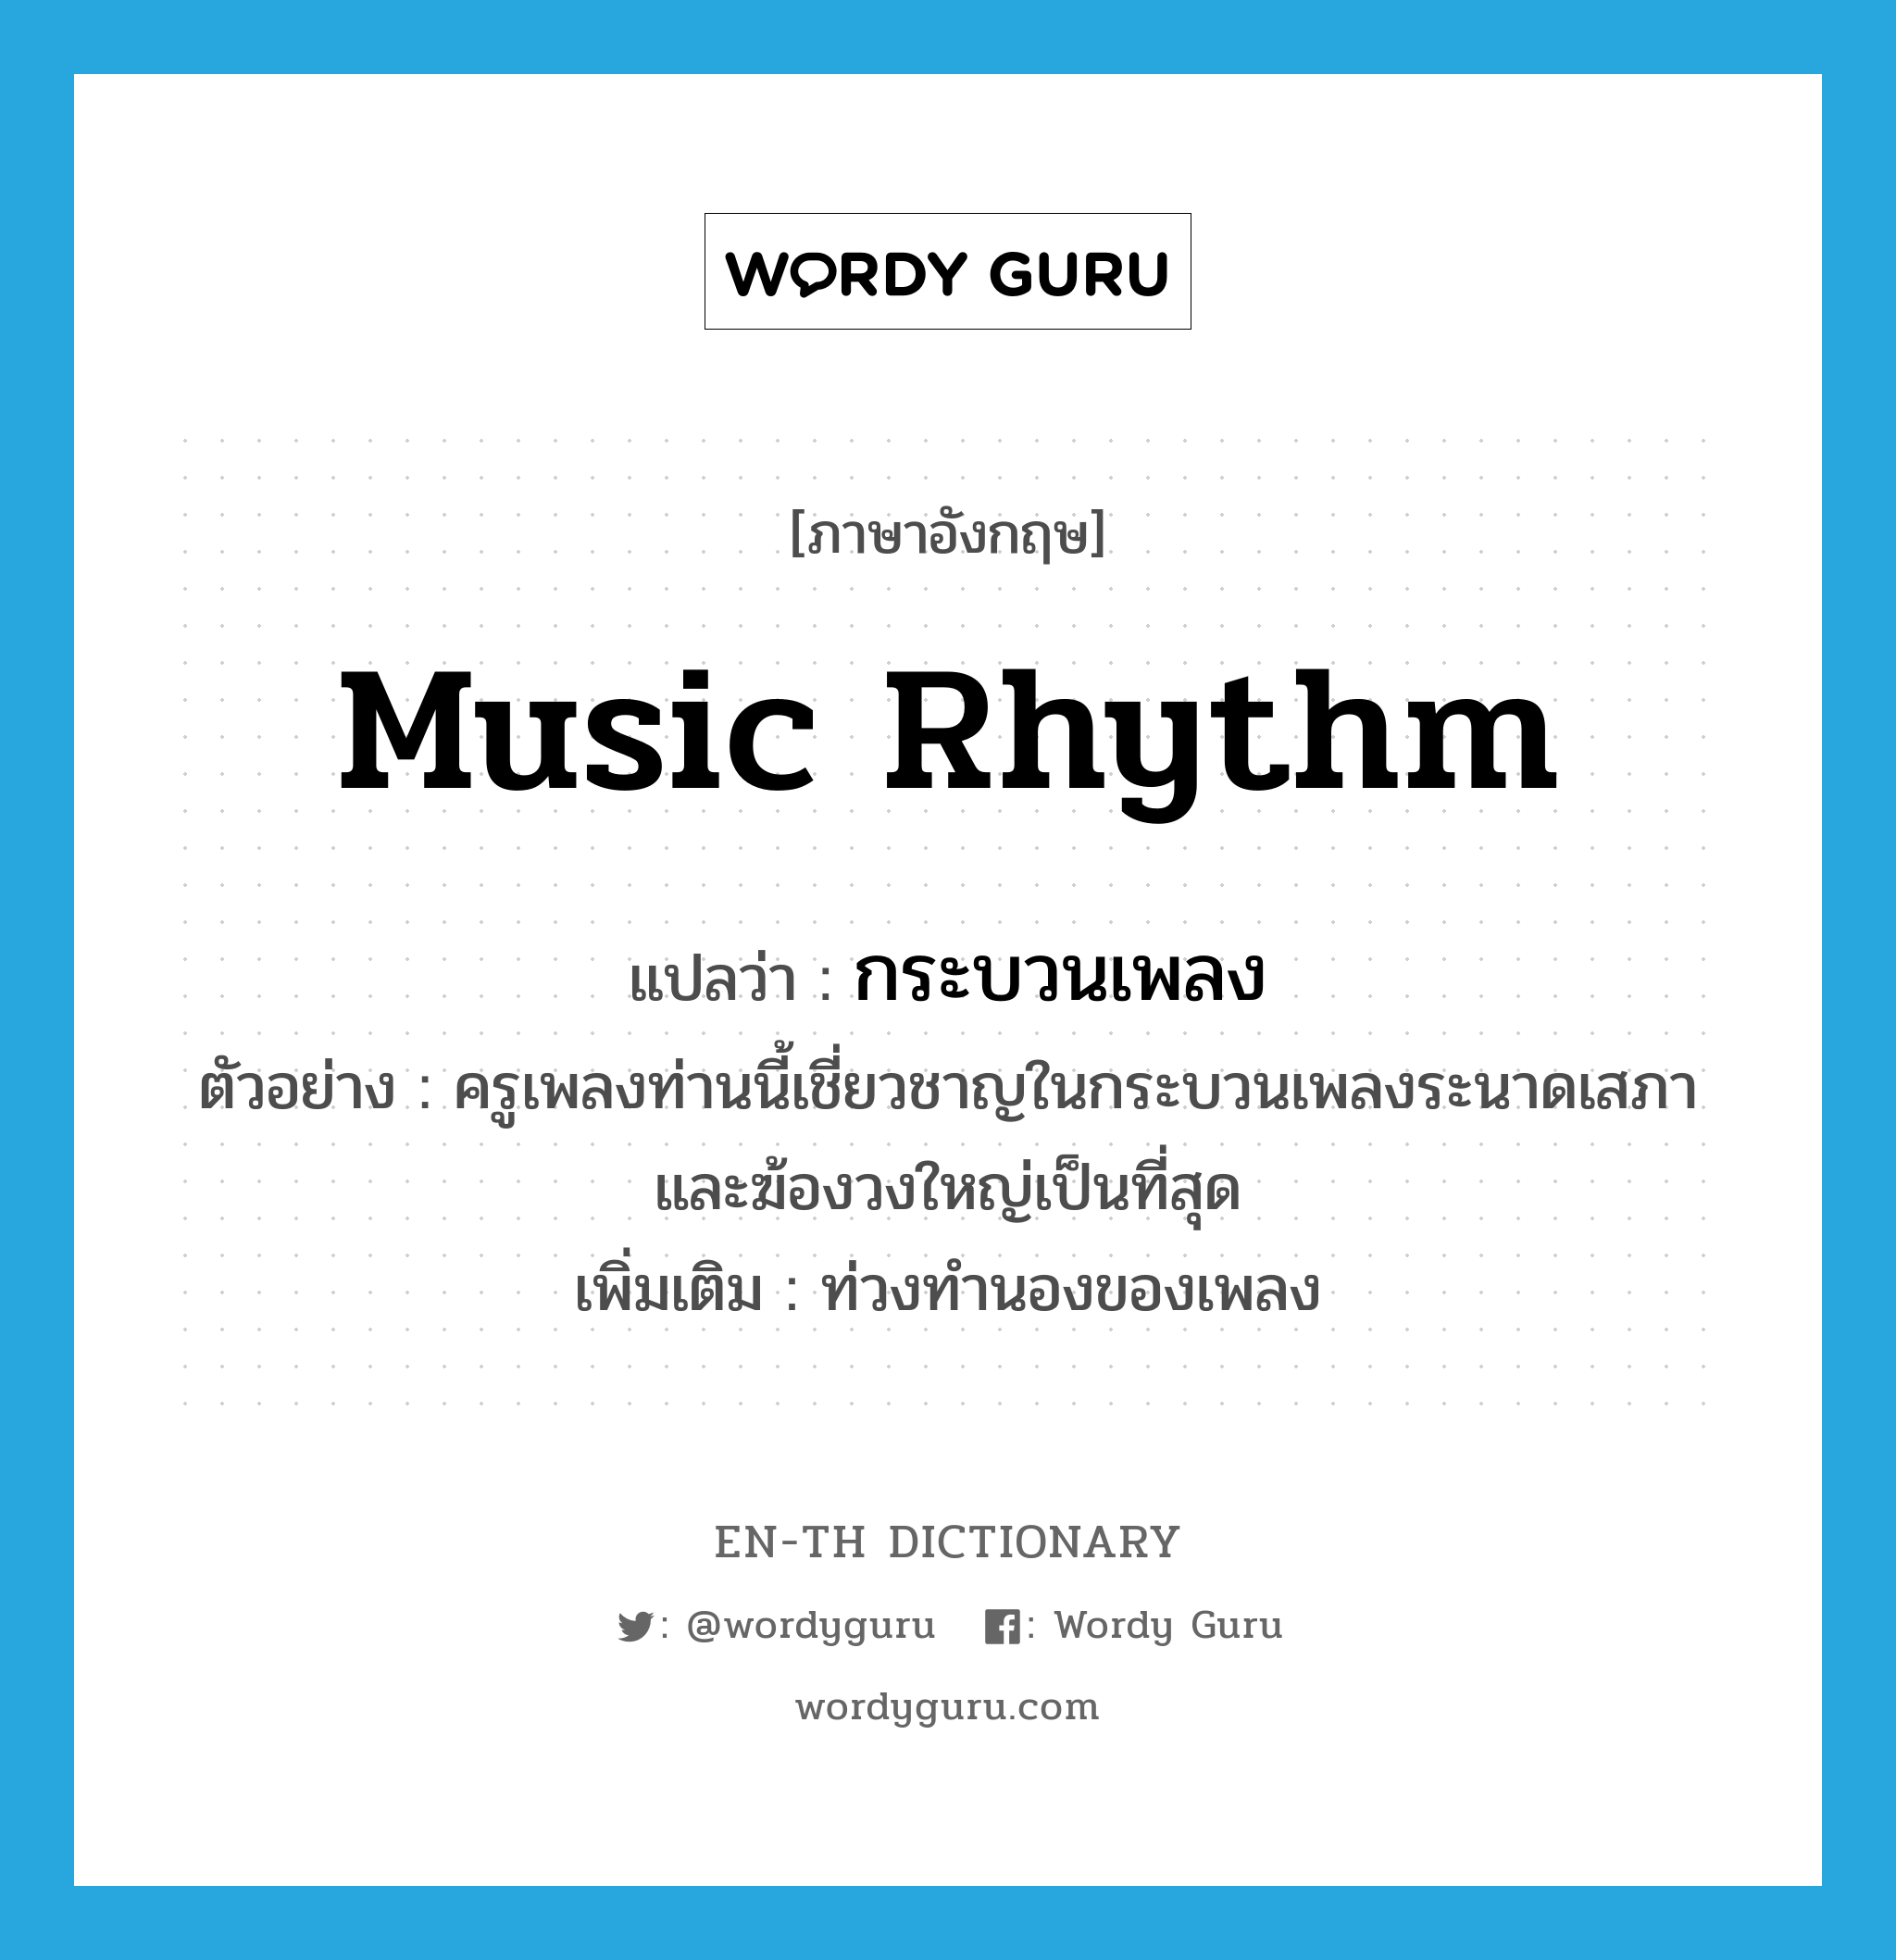 music rhythm แปลว่า?, คำศัพท์ภาษาอังกฤษ music rhythm แปลว่า กระบวนเพลง ประเภท N ตัวอย่าง ครูเพลงท่านนี้เชี่ยวชาญในกระบวนเพลงระนาดเสภาและฆ้องวงใหญ่เป็นที่สุด เพิ่มเติม ท่วงทำนองของเพลง หมวด N